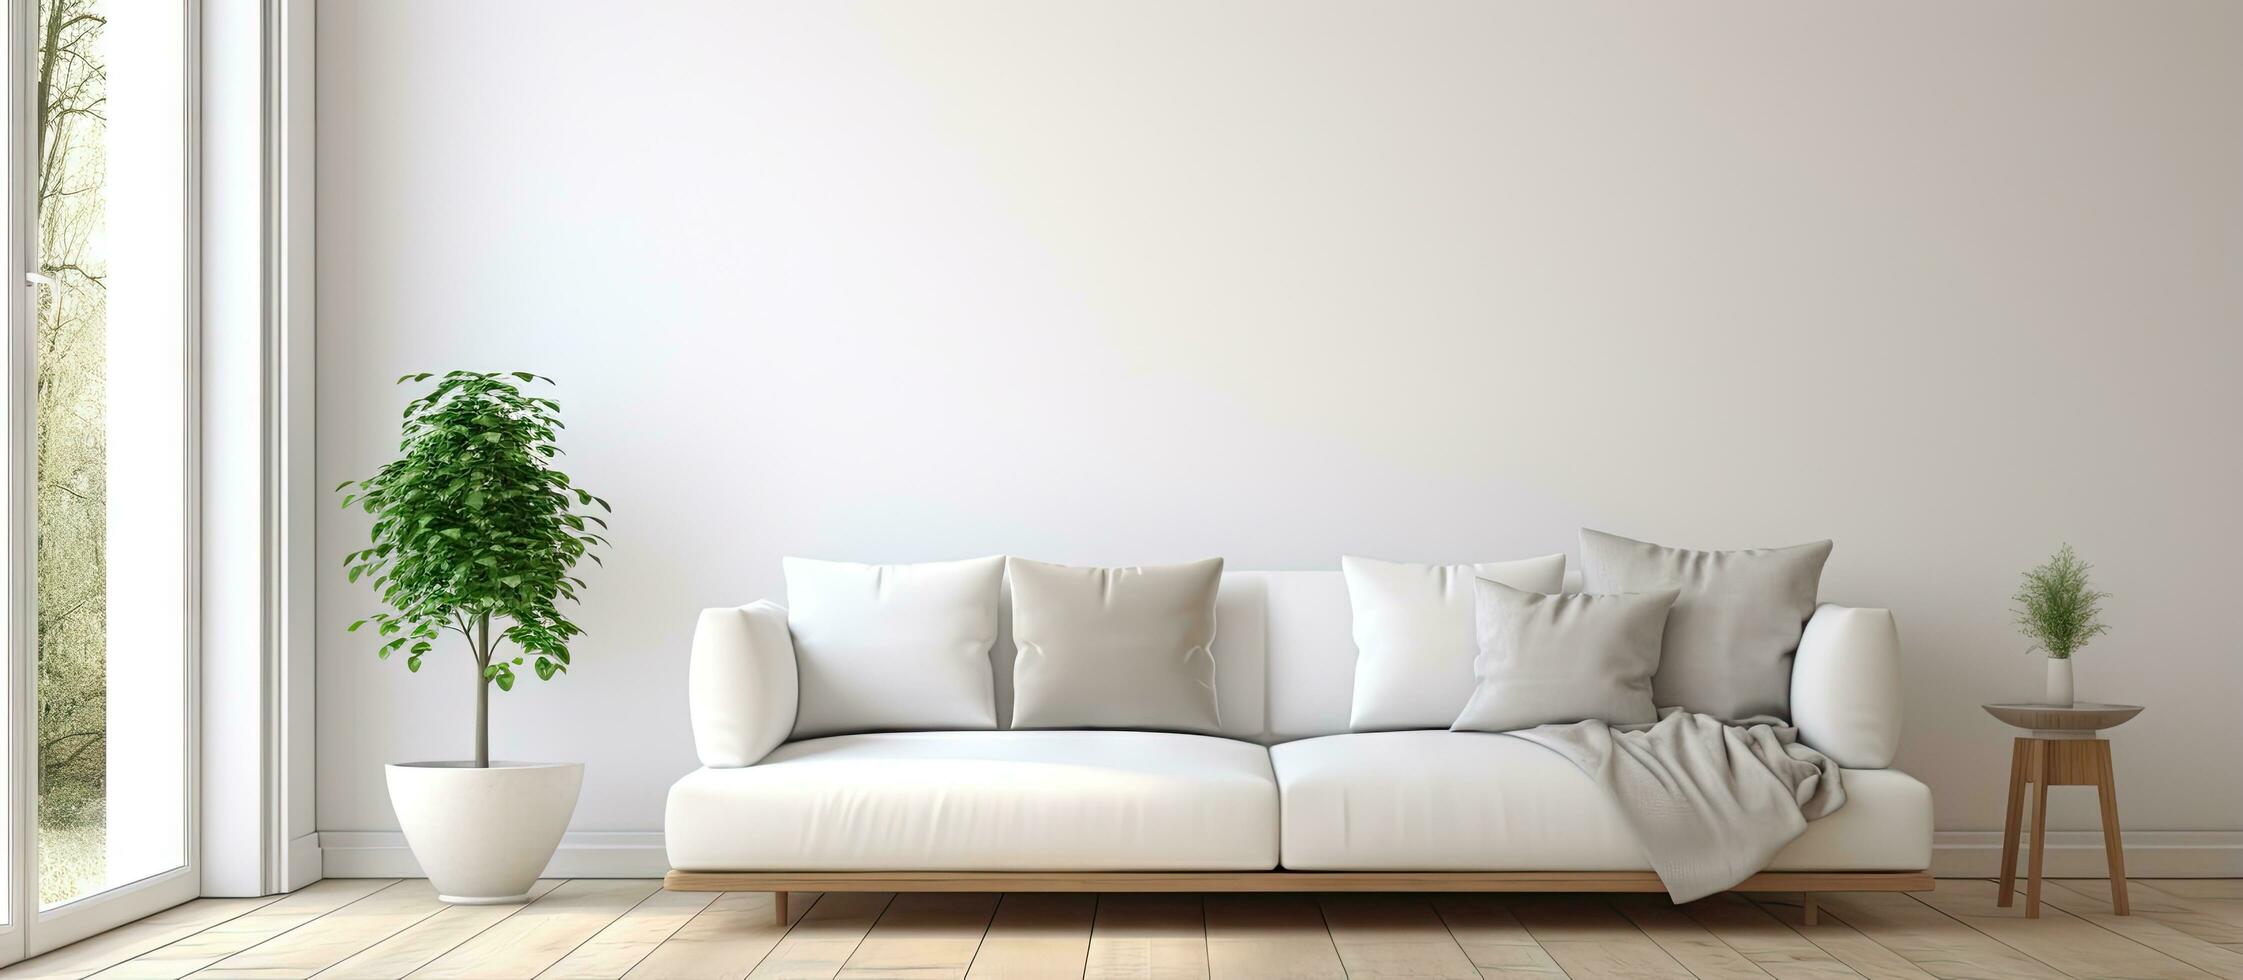 nórdico estilo hogar con blanco vivo habitación de madera piso y grande pared decoración presentando un ventana con un blanco paisaje ilustración foto